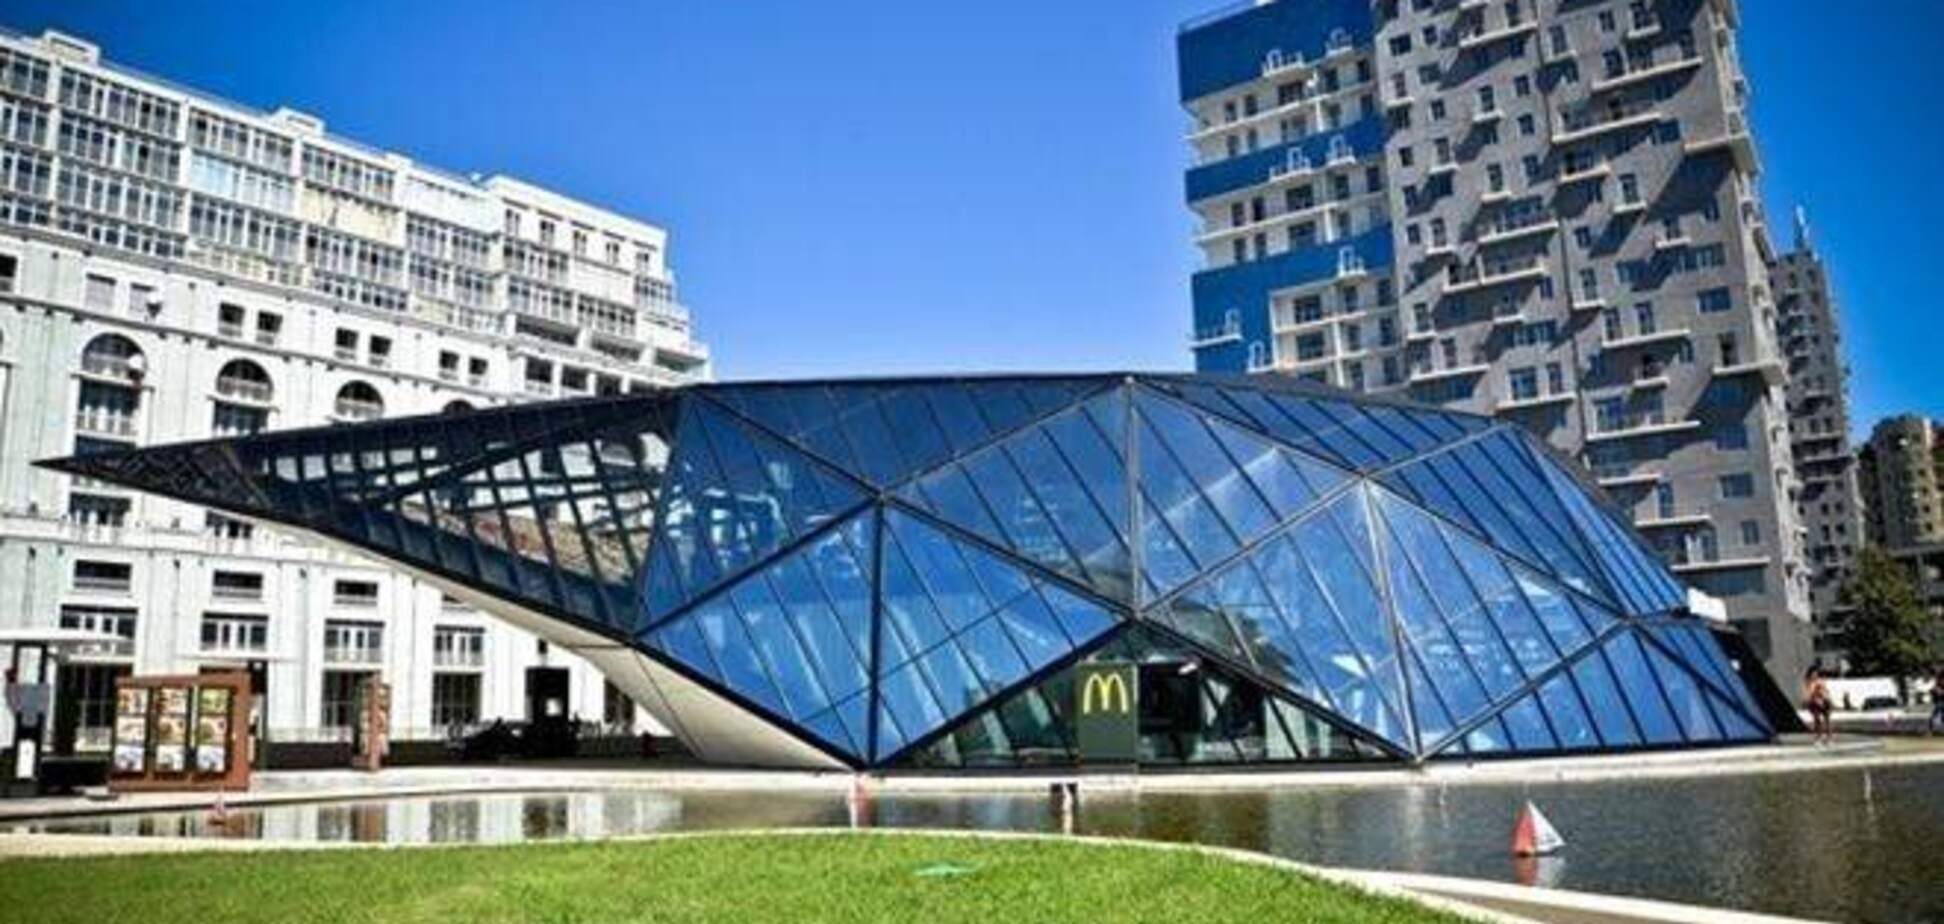 Сооружение McDonald's в Батуми – изюминка Грузии